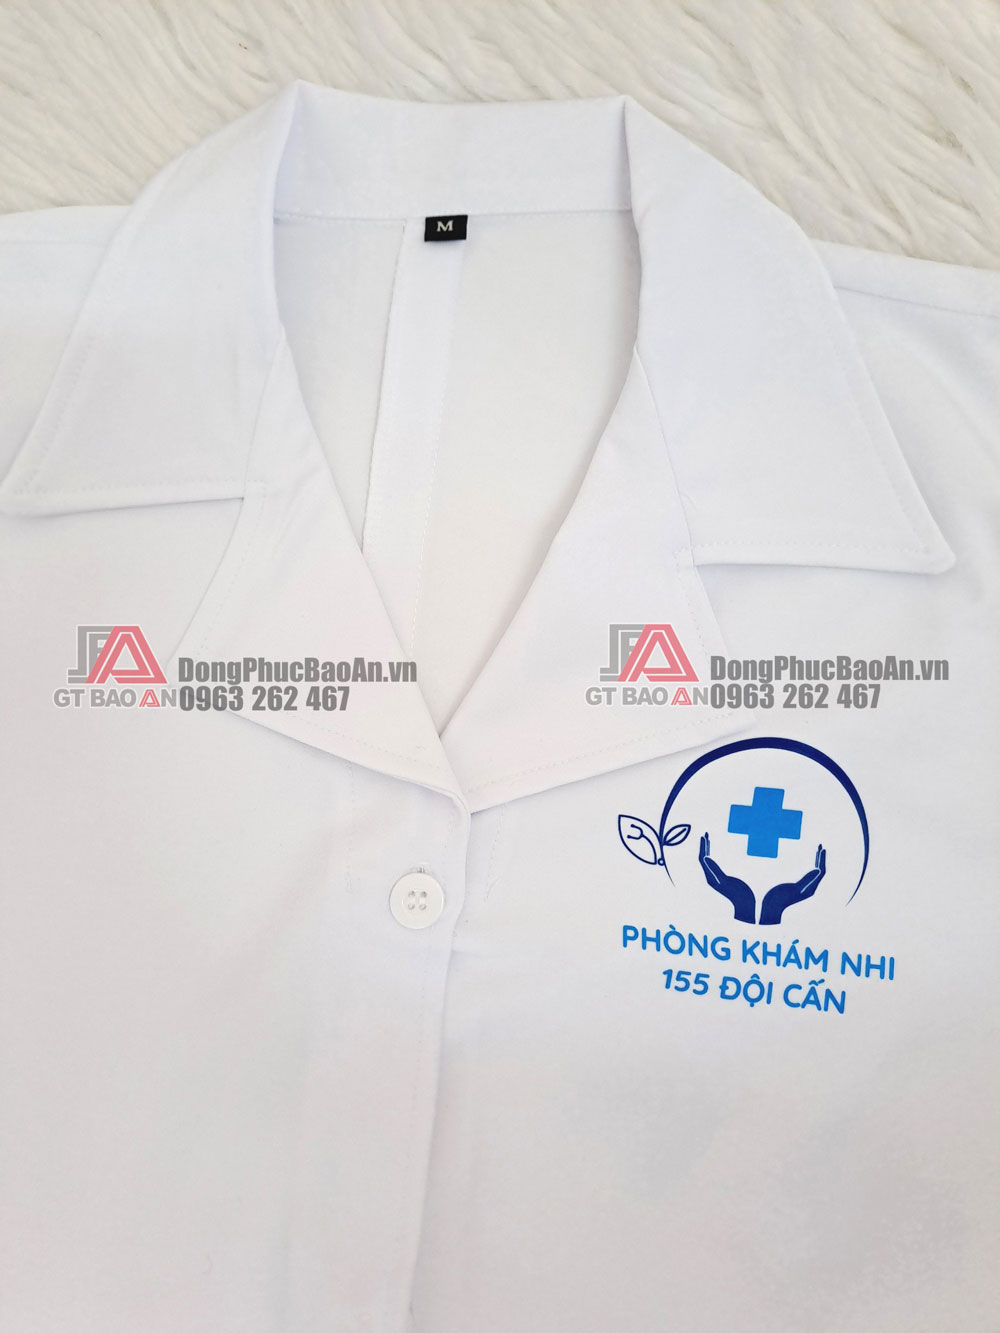 Nhận in thêu áo blouse bác sĩ, y tá theo yêu cầu nhanh rẻ TPHCM quận Bình Tân